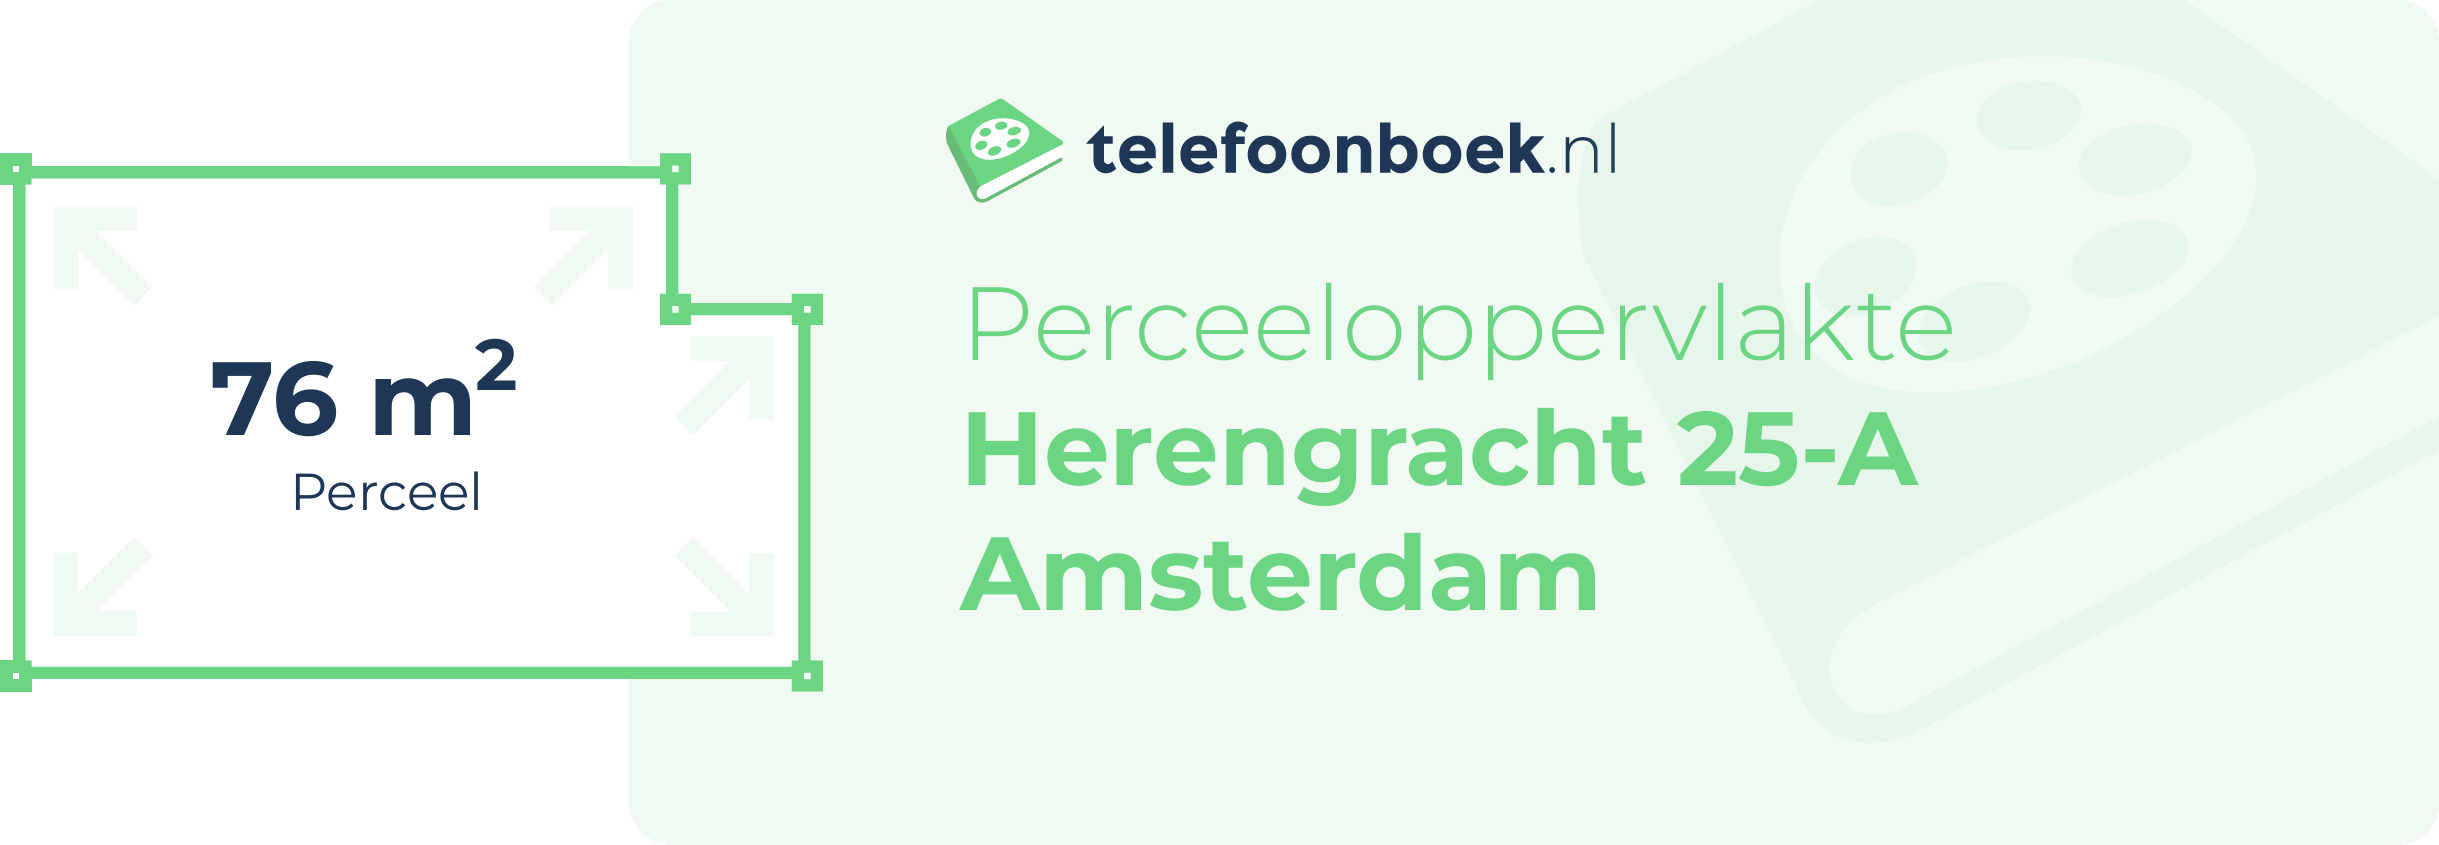 Perceeloppervlakte Herengracht 25-A Amsterdam